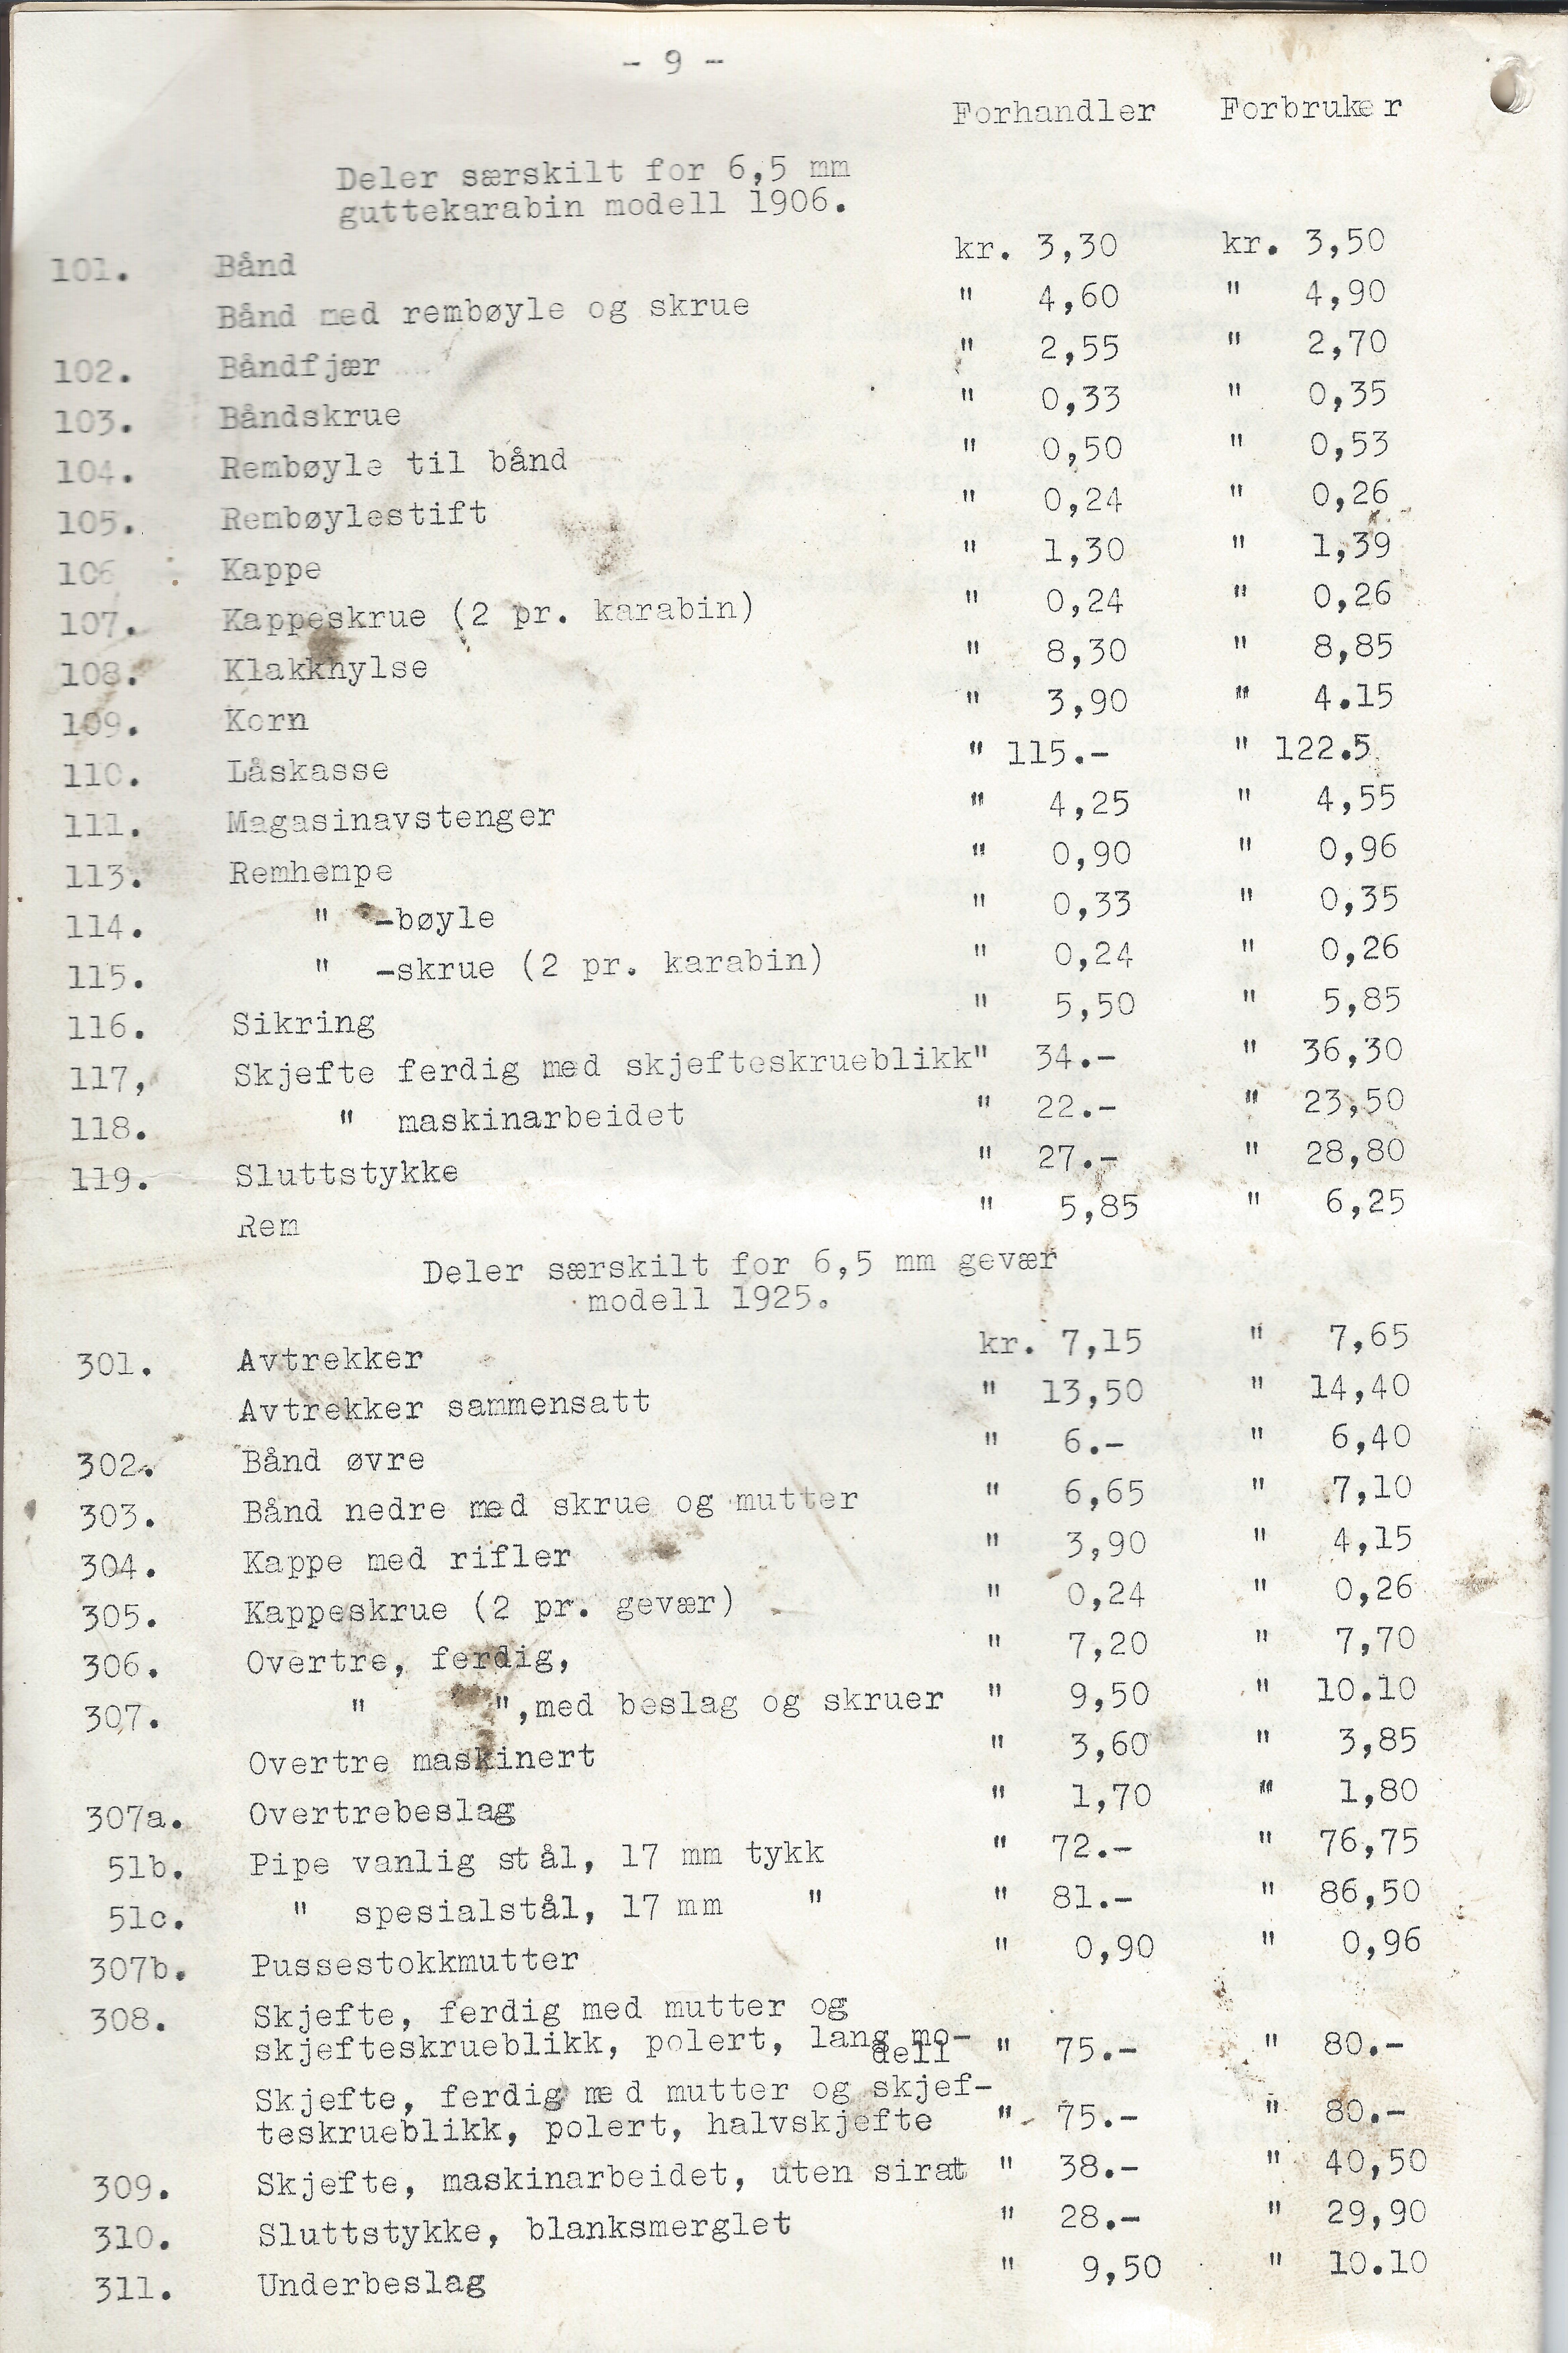 ./doc/KV/KV-Prisliste-Deler-Nr15-September-1948-10.jpg